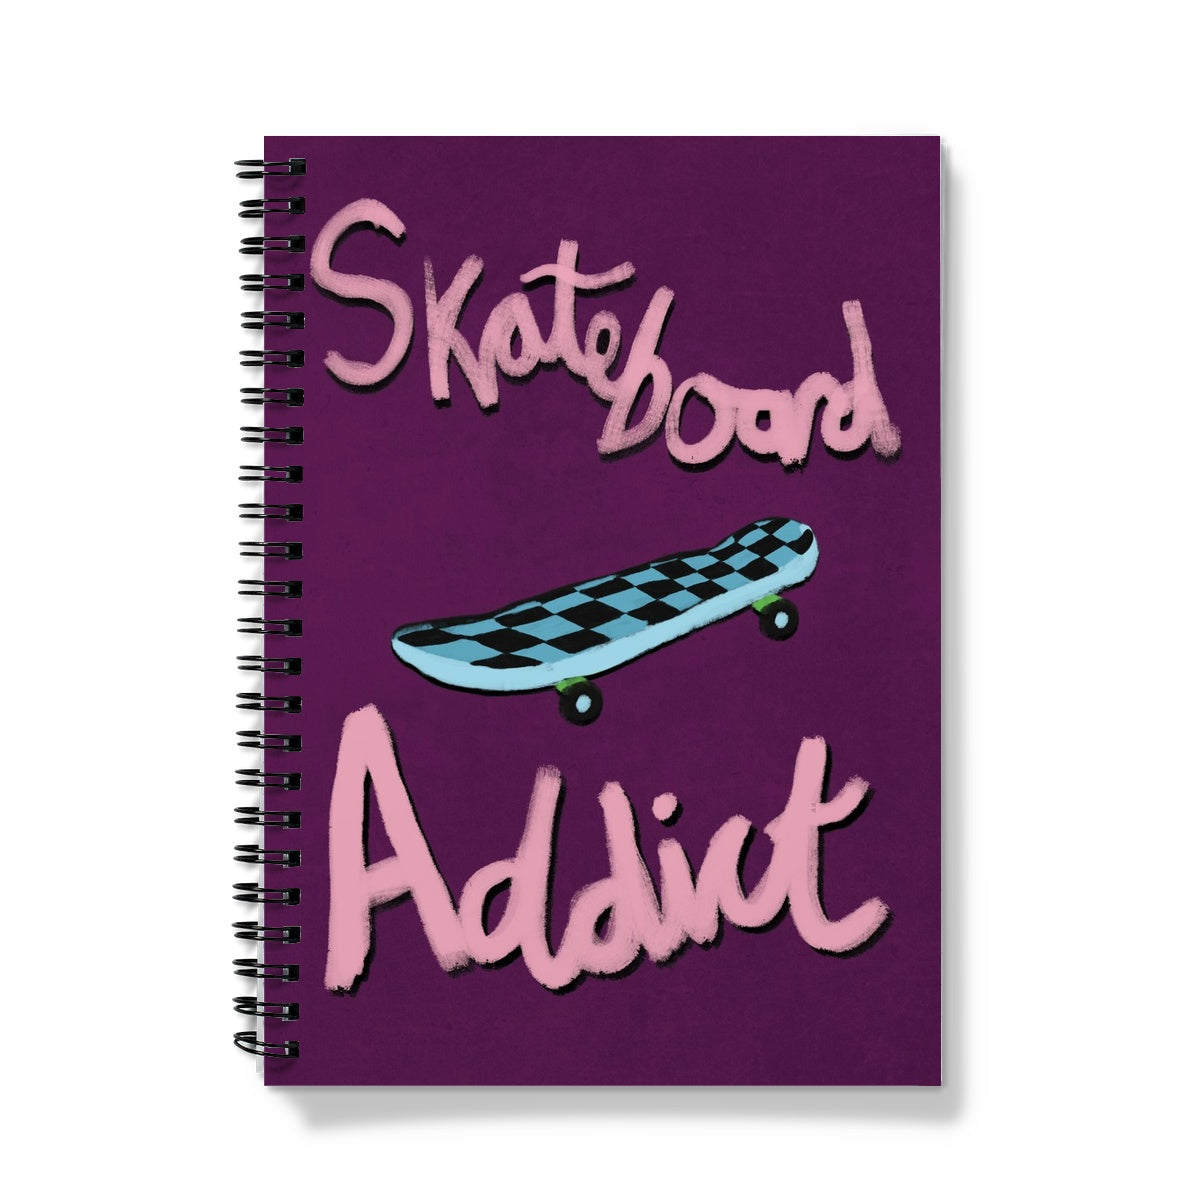 Skateboard Addict - Dark Purple, Pink, Blue Notebook